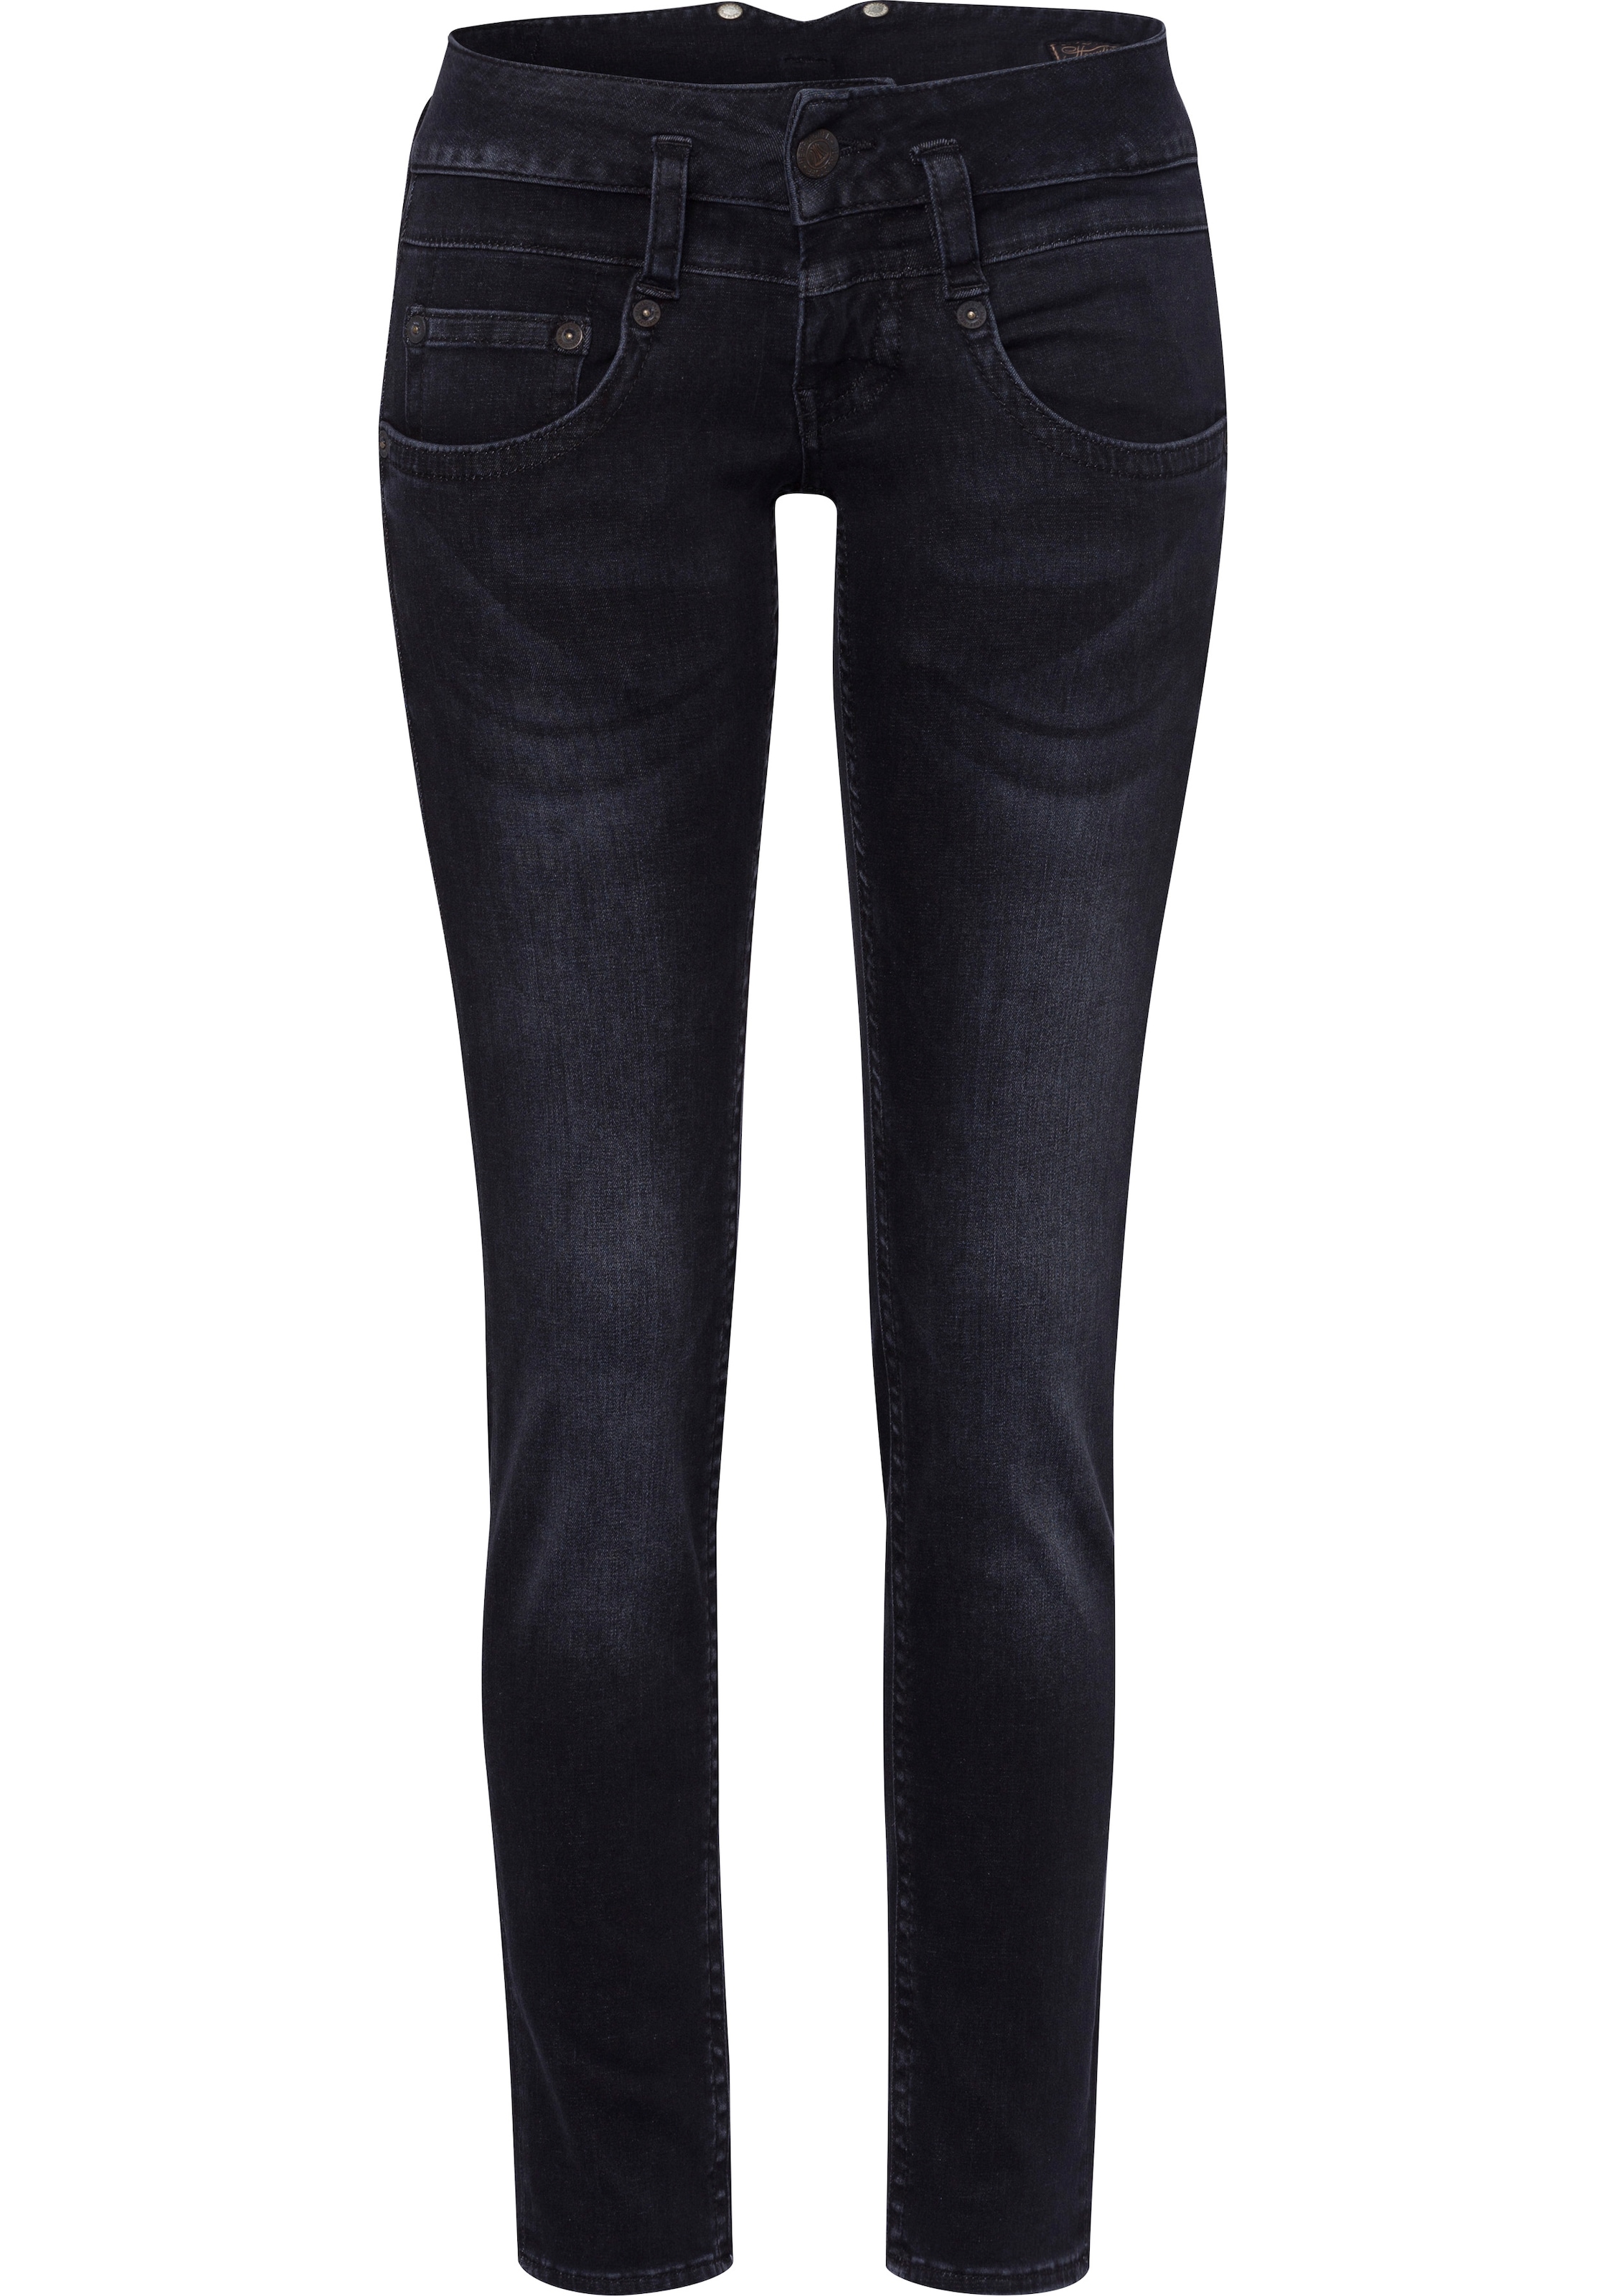 Herrlicher Slim-fit-Jeans »PITCH SLIM OTTO umweltfreundlich bei Technology ISKO New online dank REUSED«, der